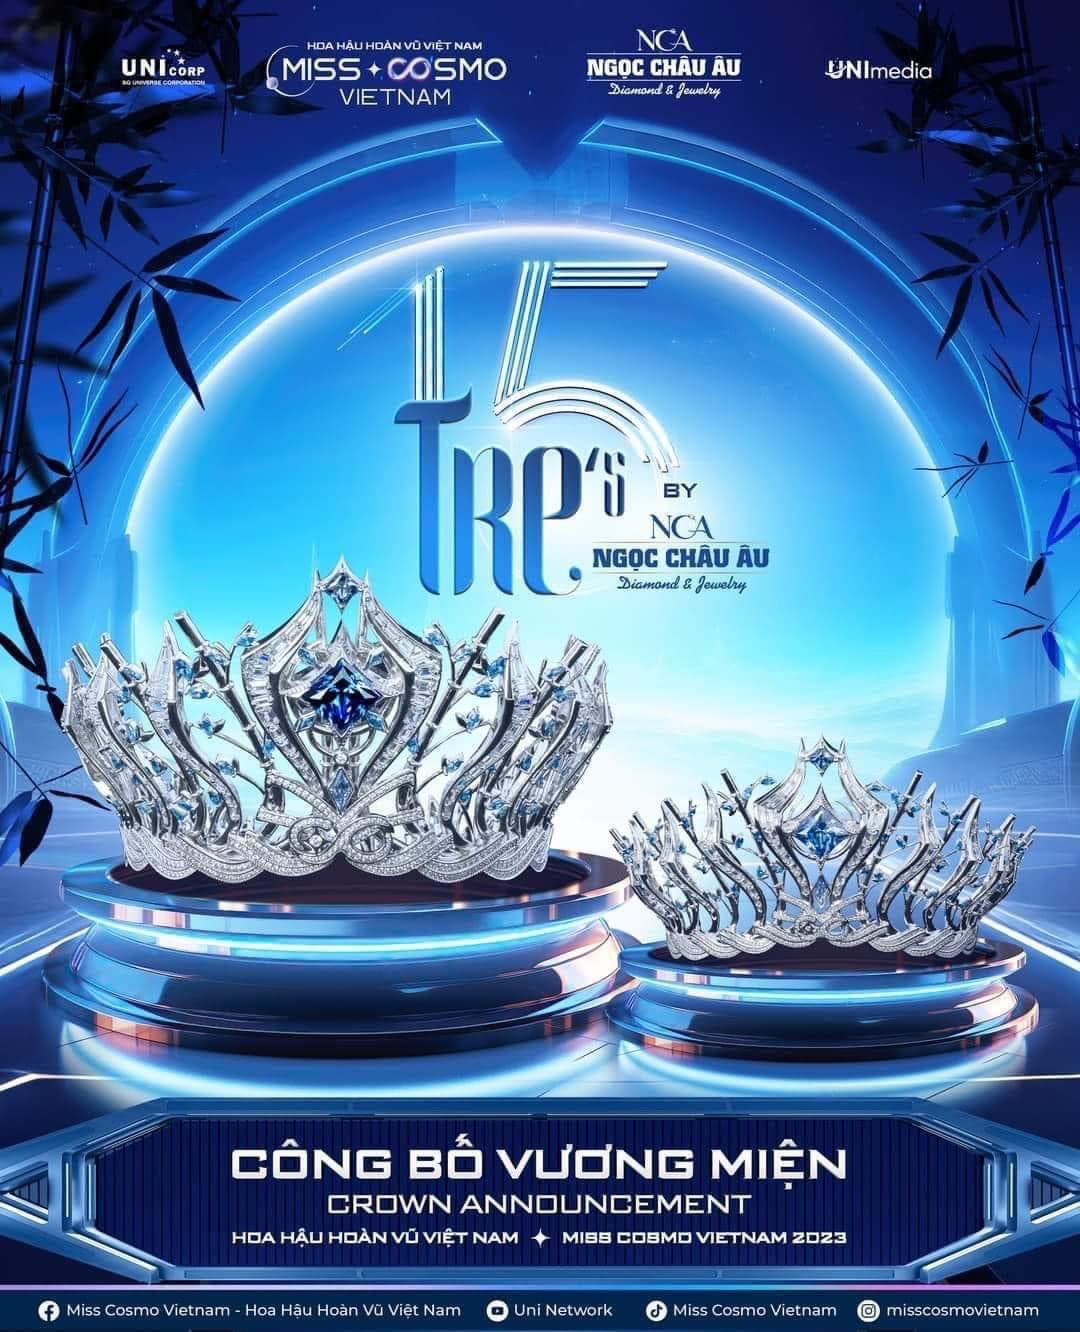 Kim cương Ngọc Châu Âu trở thành nhà tài trợ và chế tác vương miện Hoa hậu Hoàn vũ Việt Nam 2023 - 2